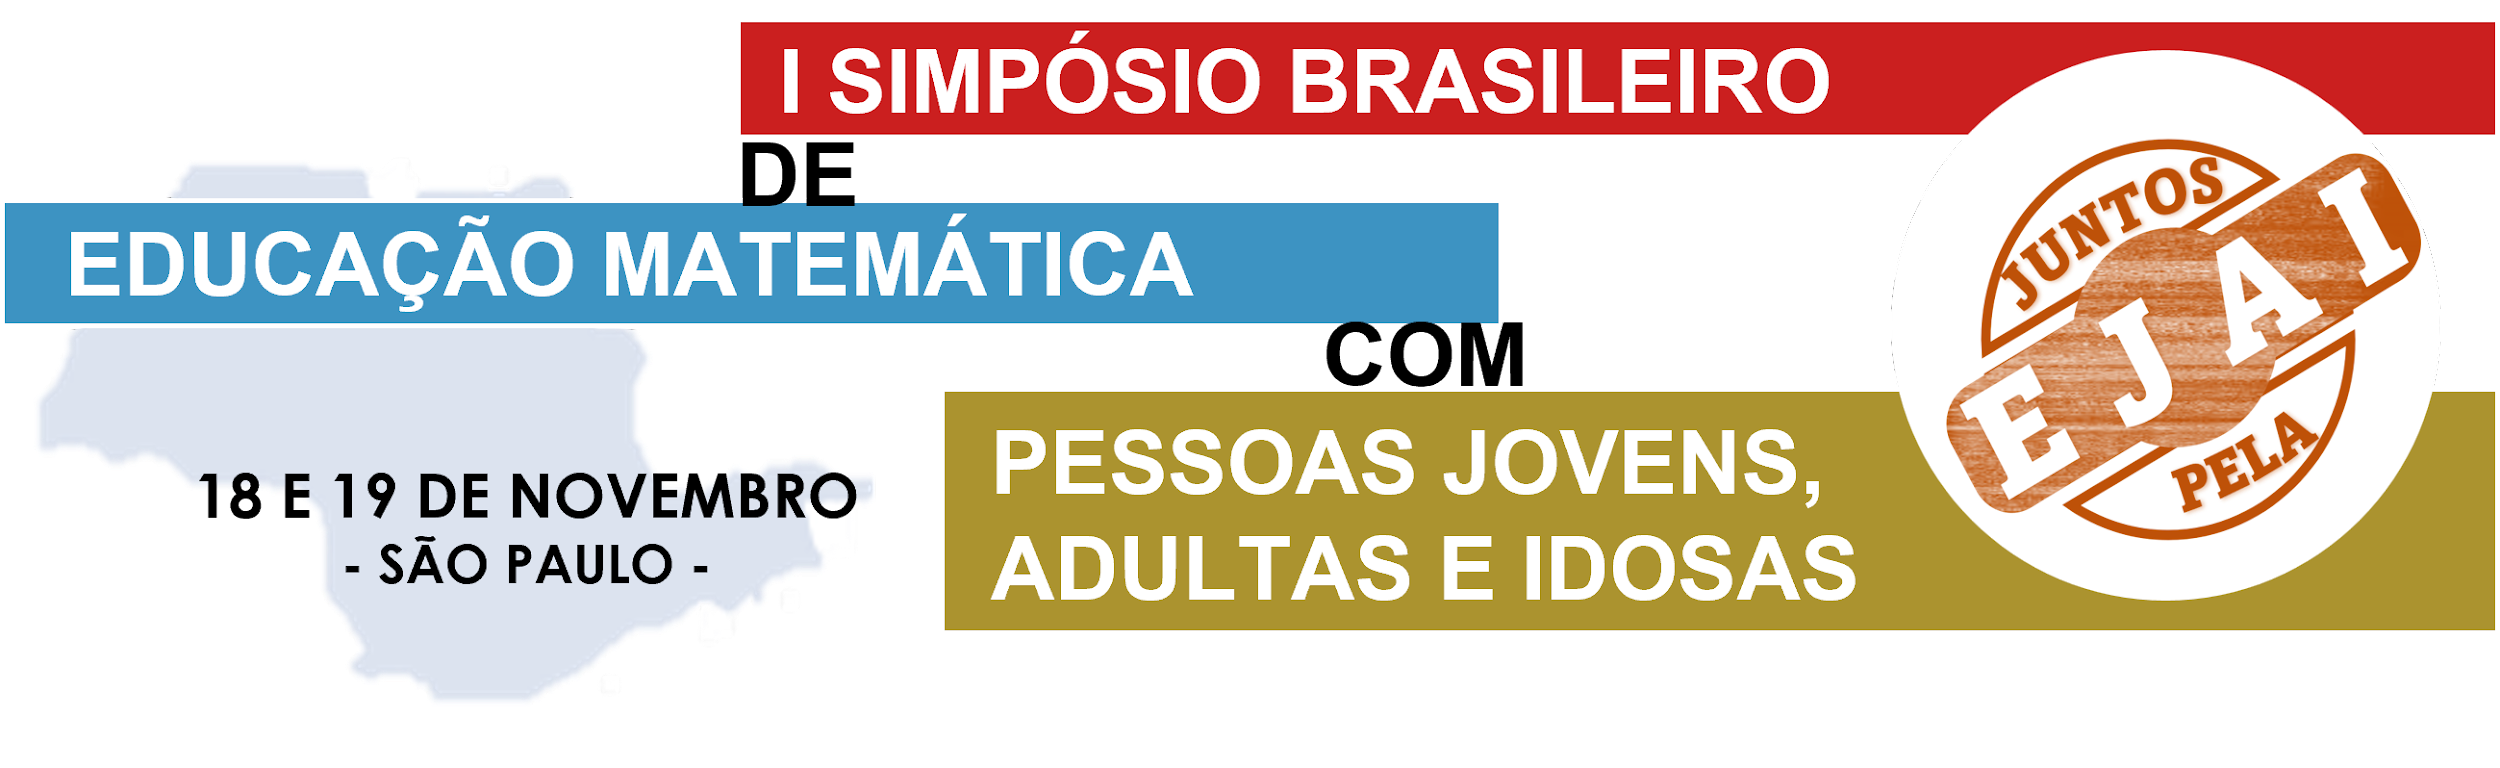 I Simpósio Brasileiro de Educação Matemática com pessoas Jovens, Adultas e Idosas